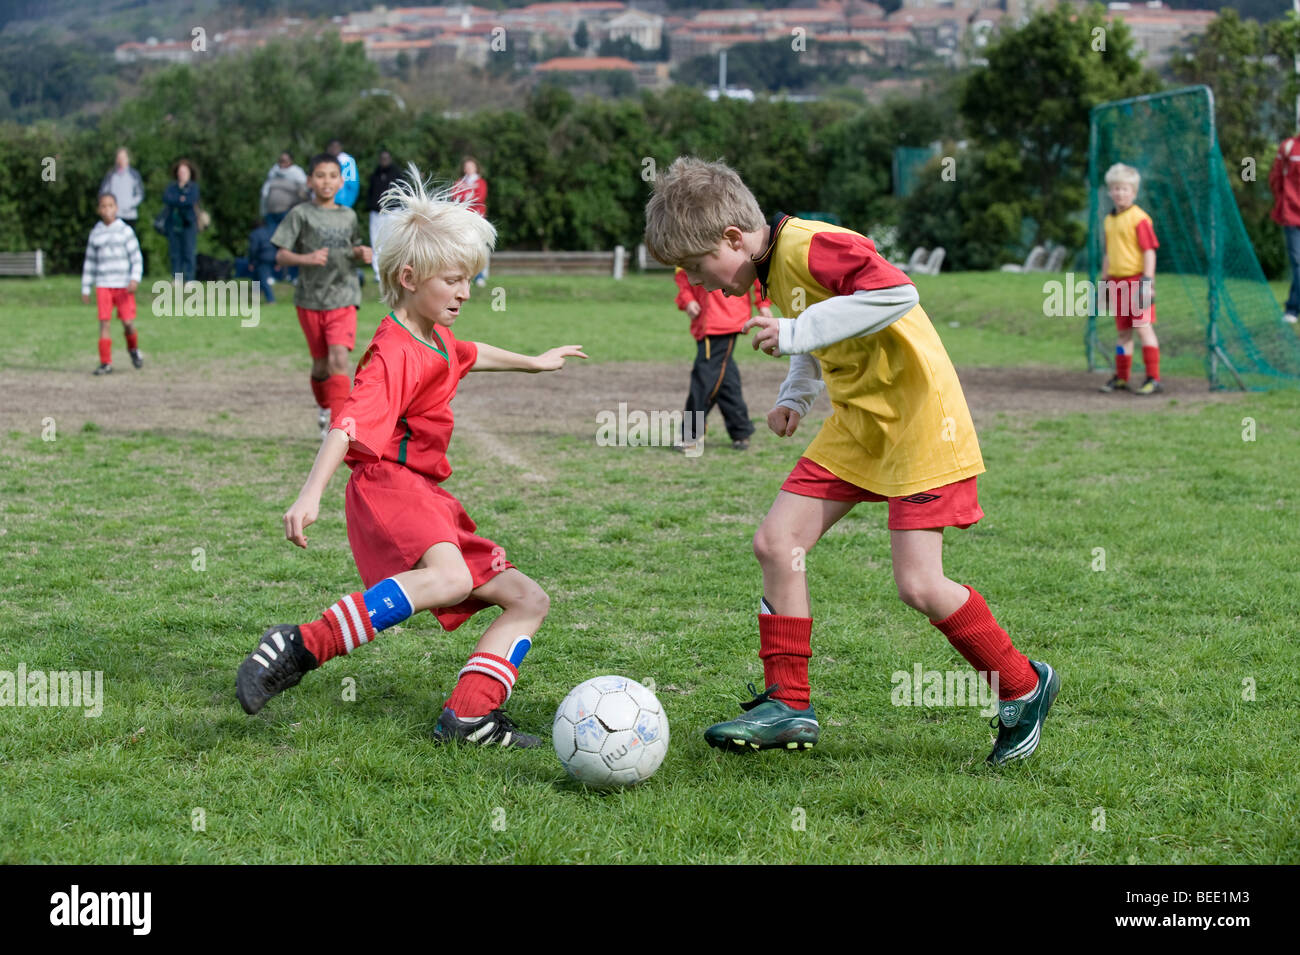 Enfants jouant un match de football, Le Cap, Afrique du Sud Banque D'Images